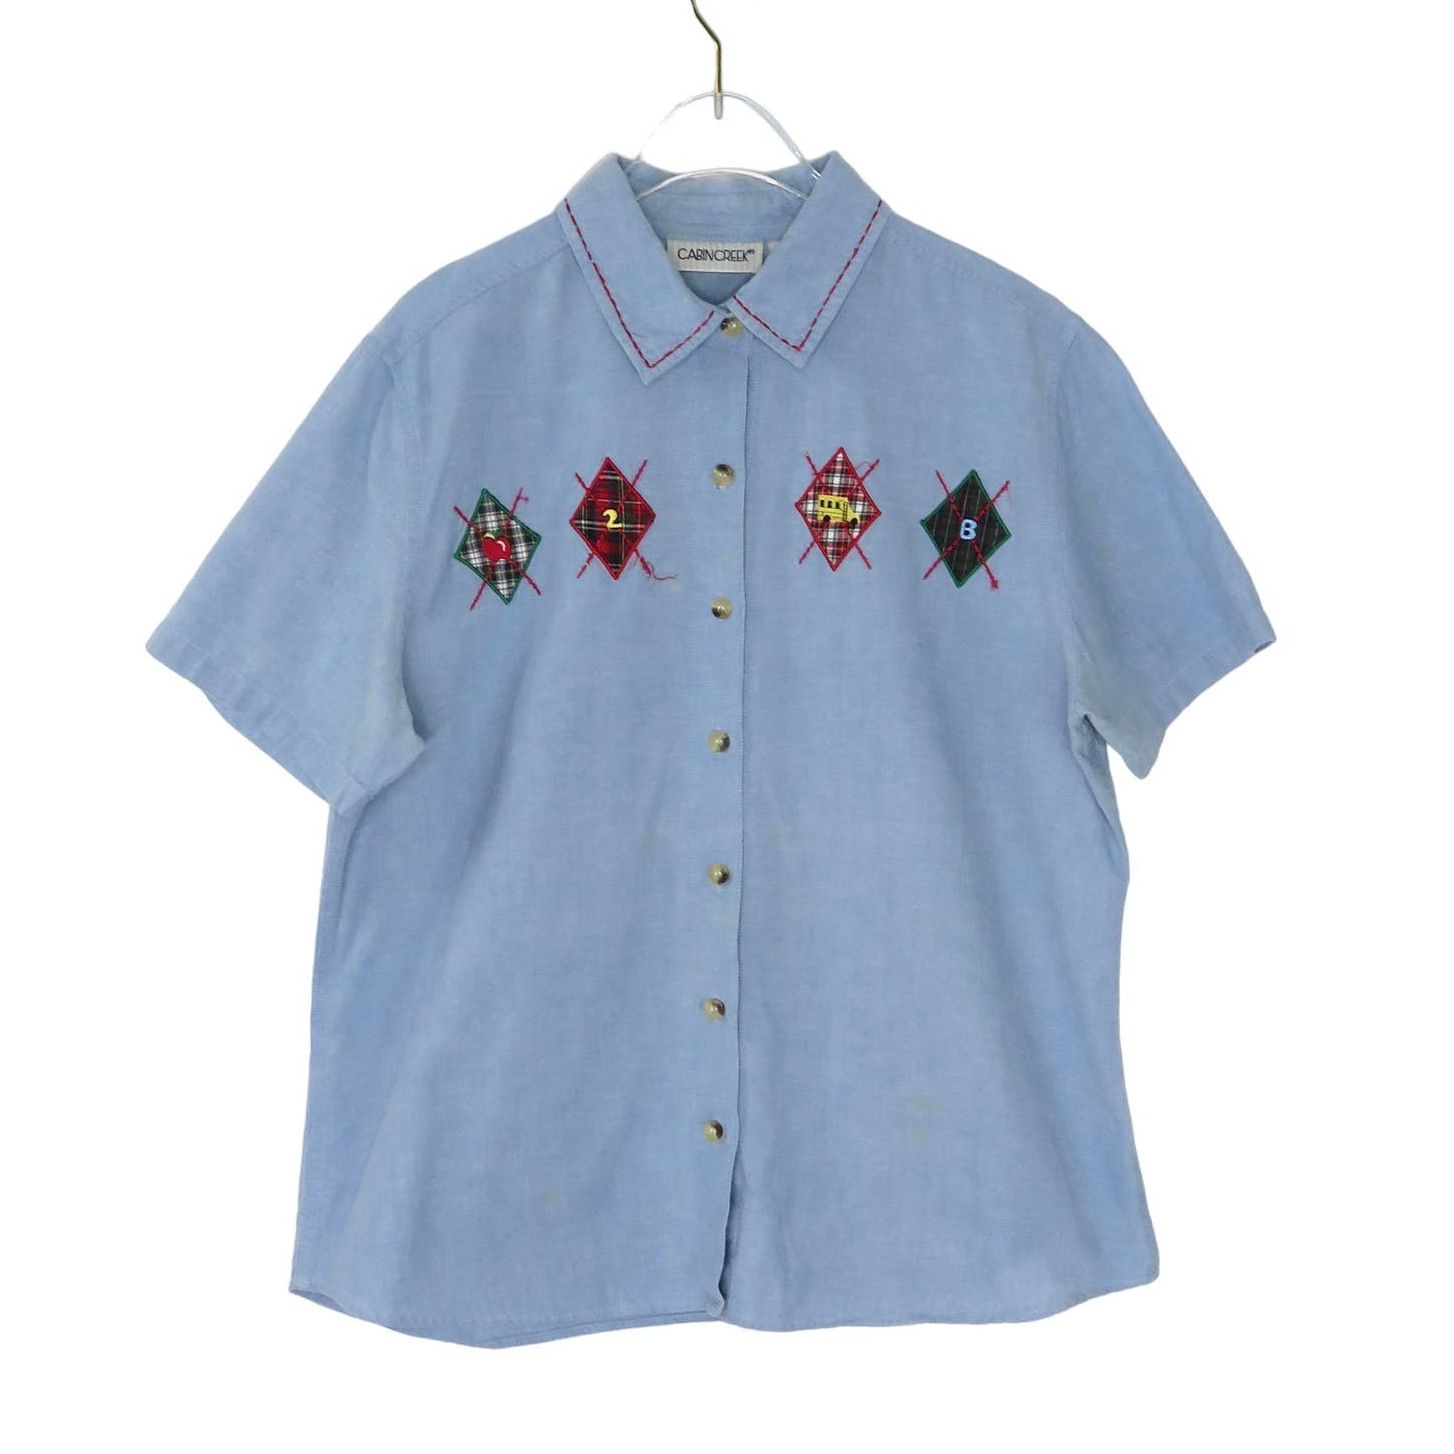 Vintage Vintage Denim Argyle Button Down Collared Shirt Large Size L / US 10 / IT 46 - 2 Preview